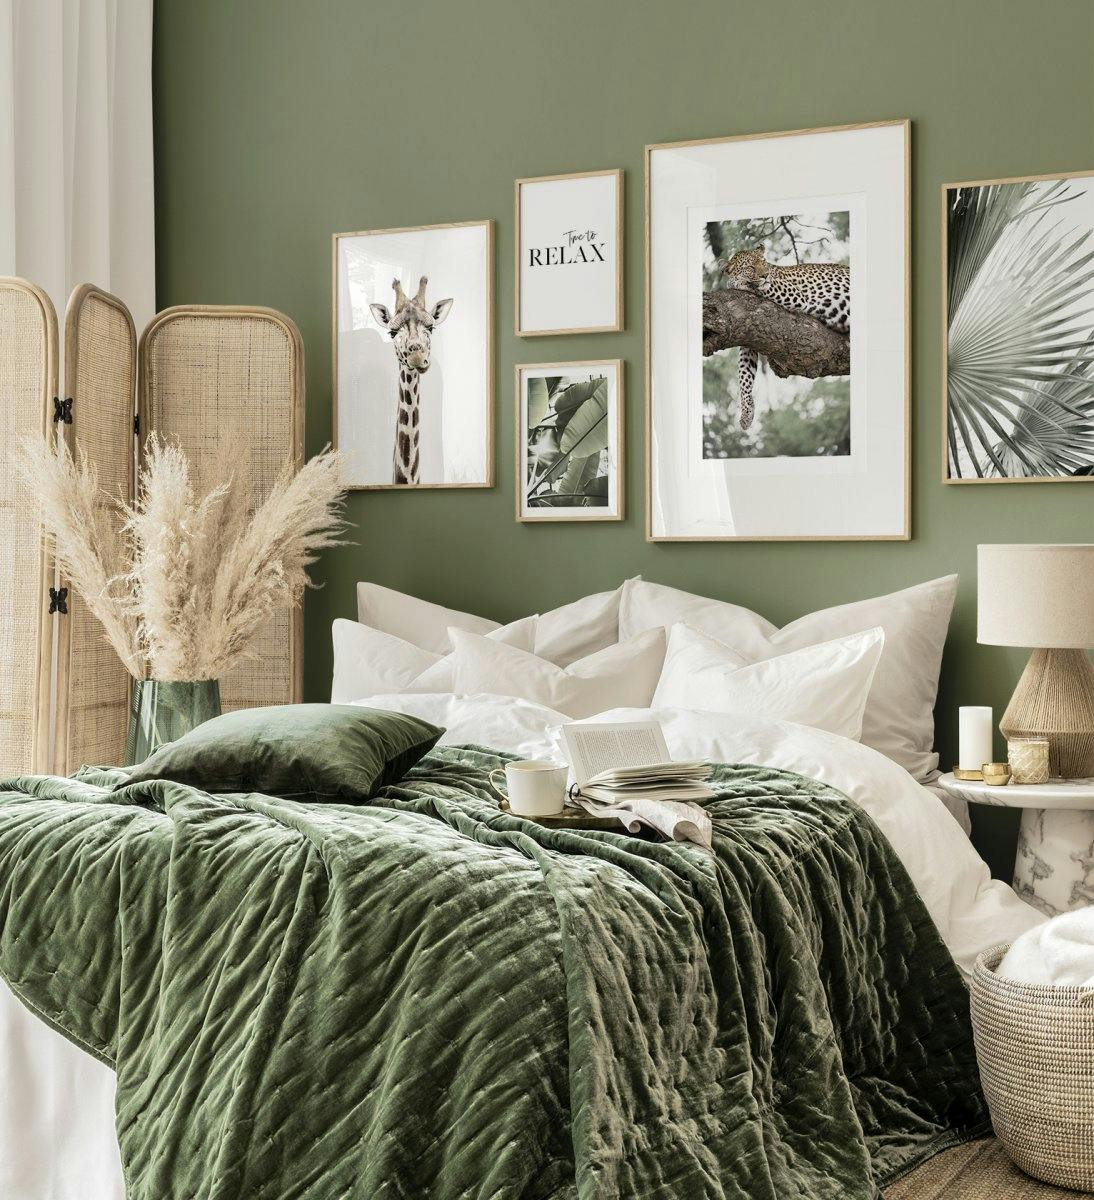 مناظر طبيعية خضراء وجدار معرض طبيعي مع إطارات من خشب البلوط لغرفة المعيشة